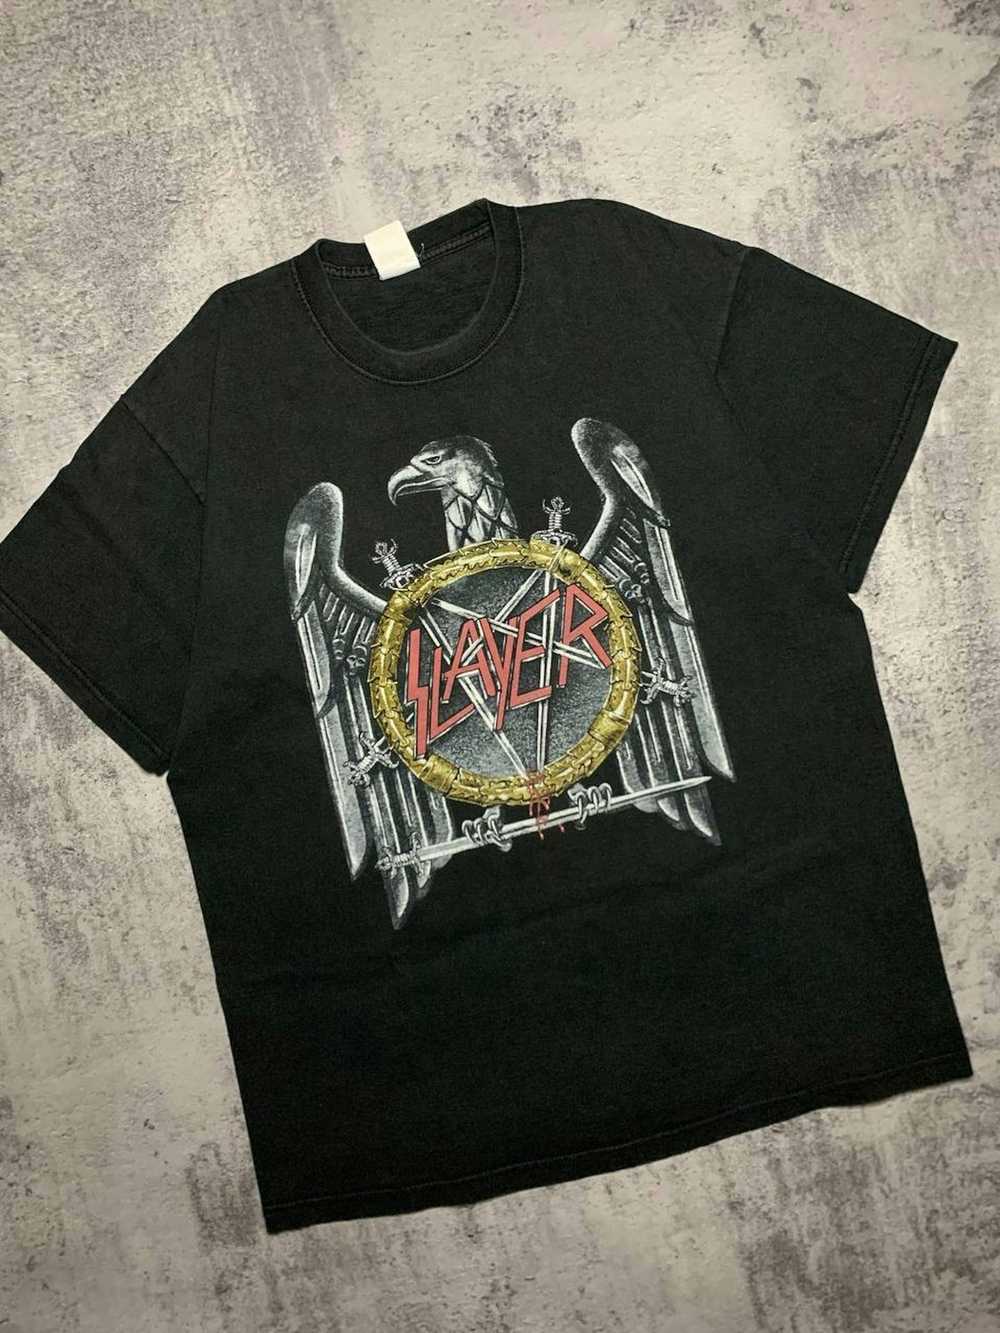 Band Tees × Slayer × Vintage 2003 Slayer shirt li… - image 2